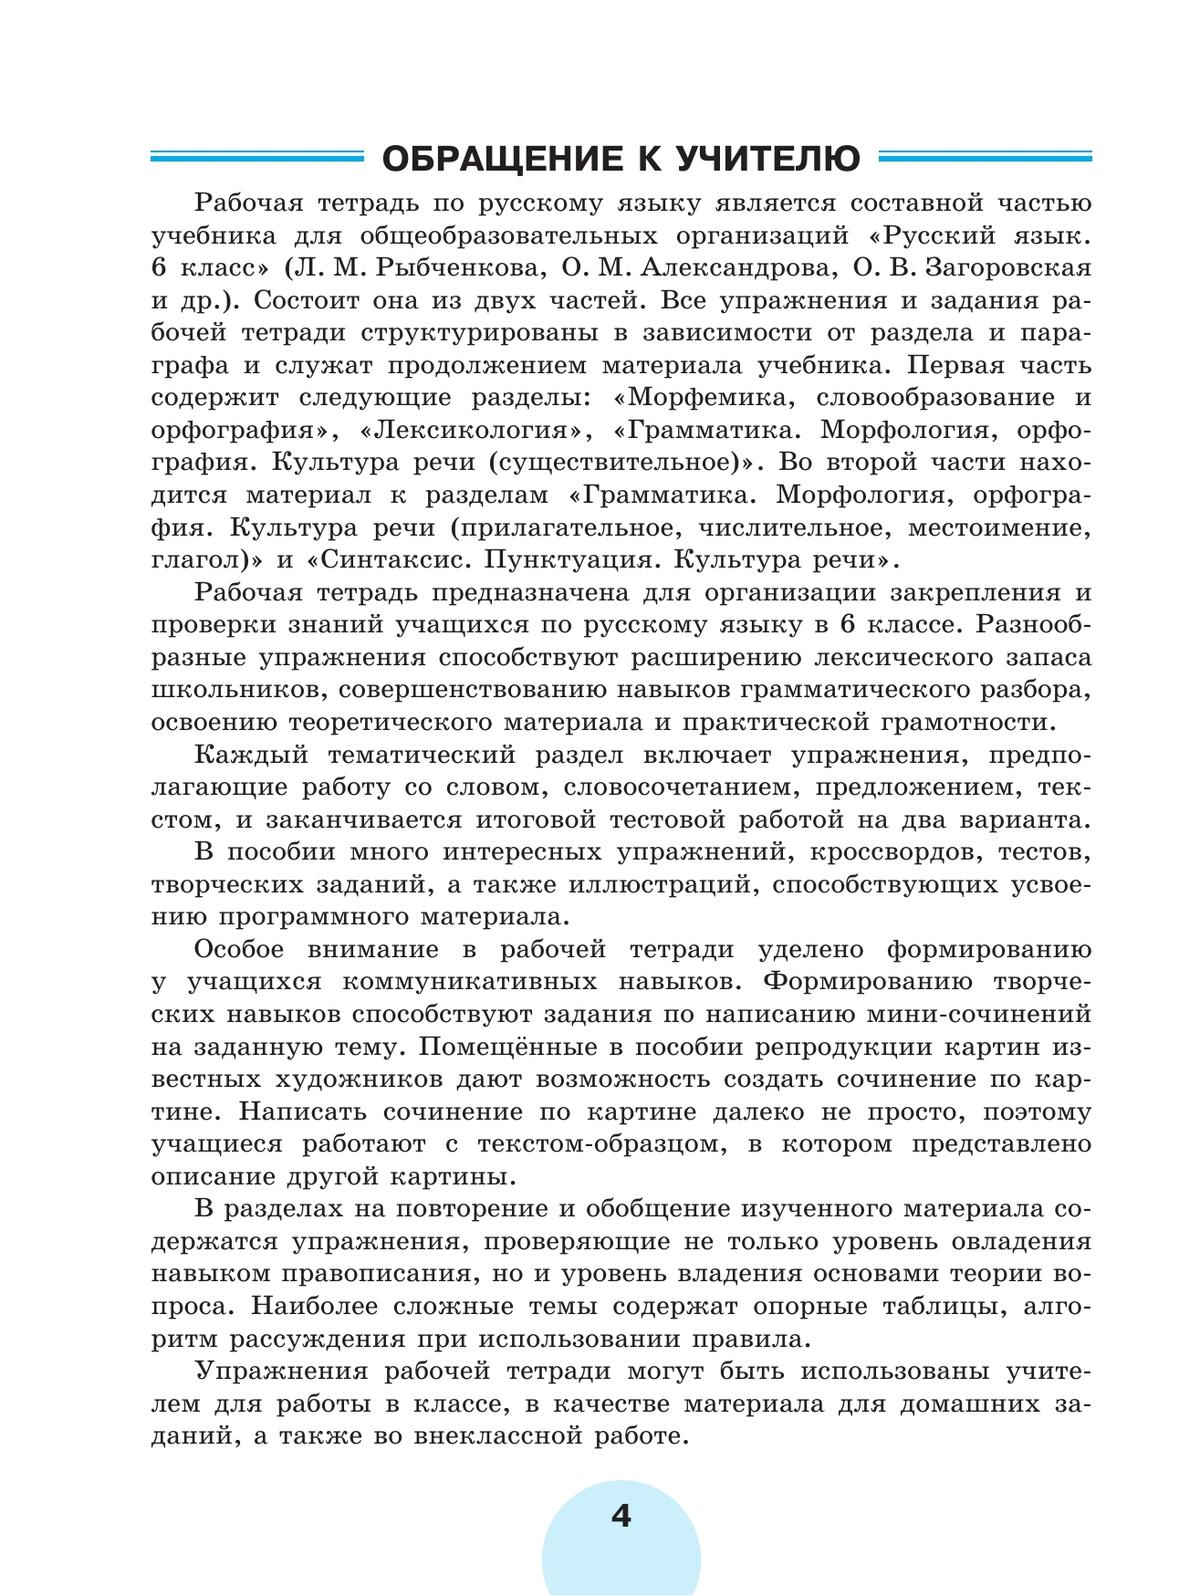 Русский язык. Рабочая тетрадь. 6 класс. В 2 ч. Часть 1 4